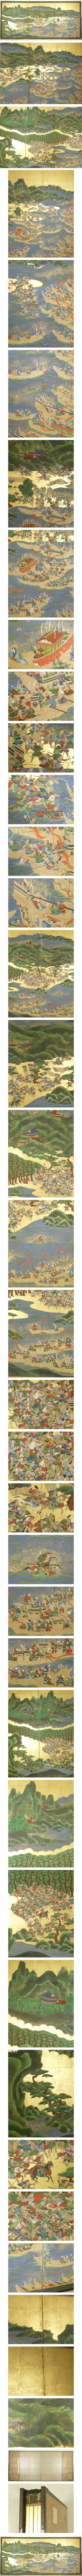 大人気金台肉筆 合戦図 屏風 高さ 約172㎝ 六曲半双 武者絵 戦 戦国 歴史画 人物、菩薩